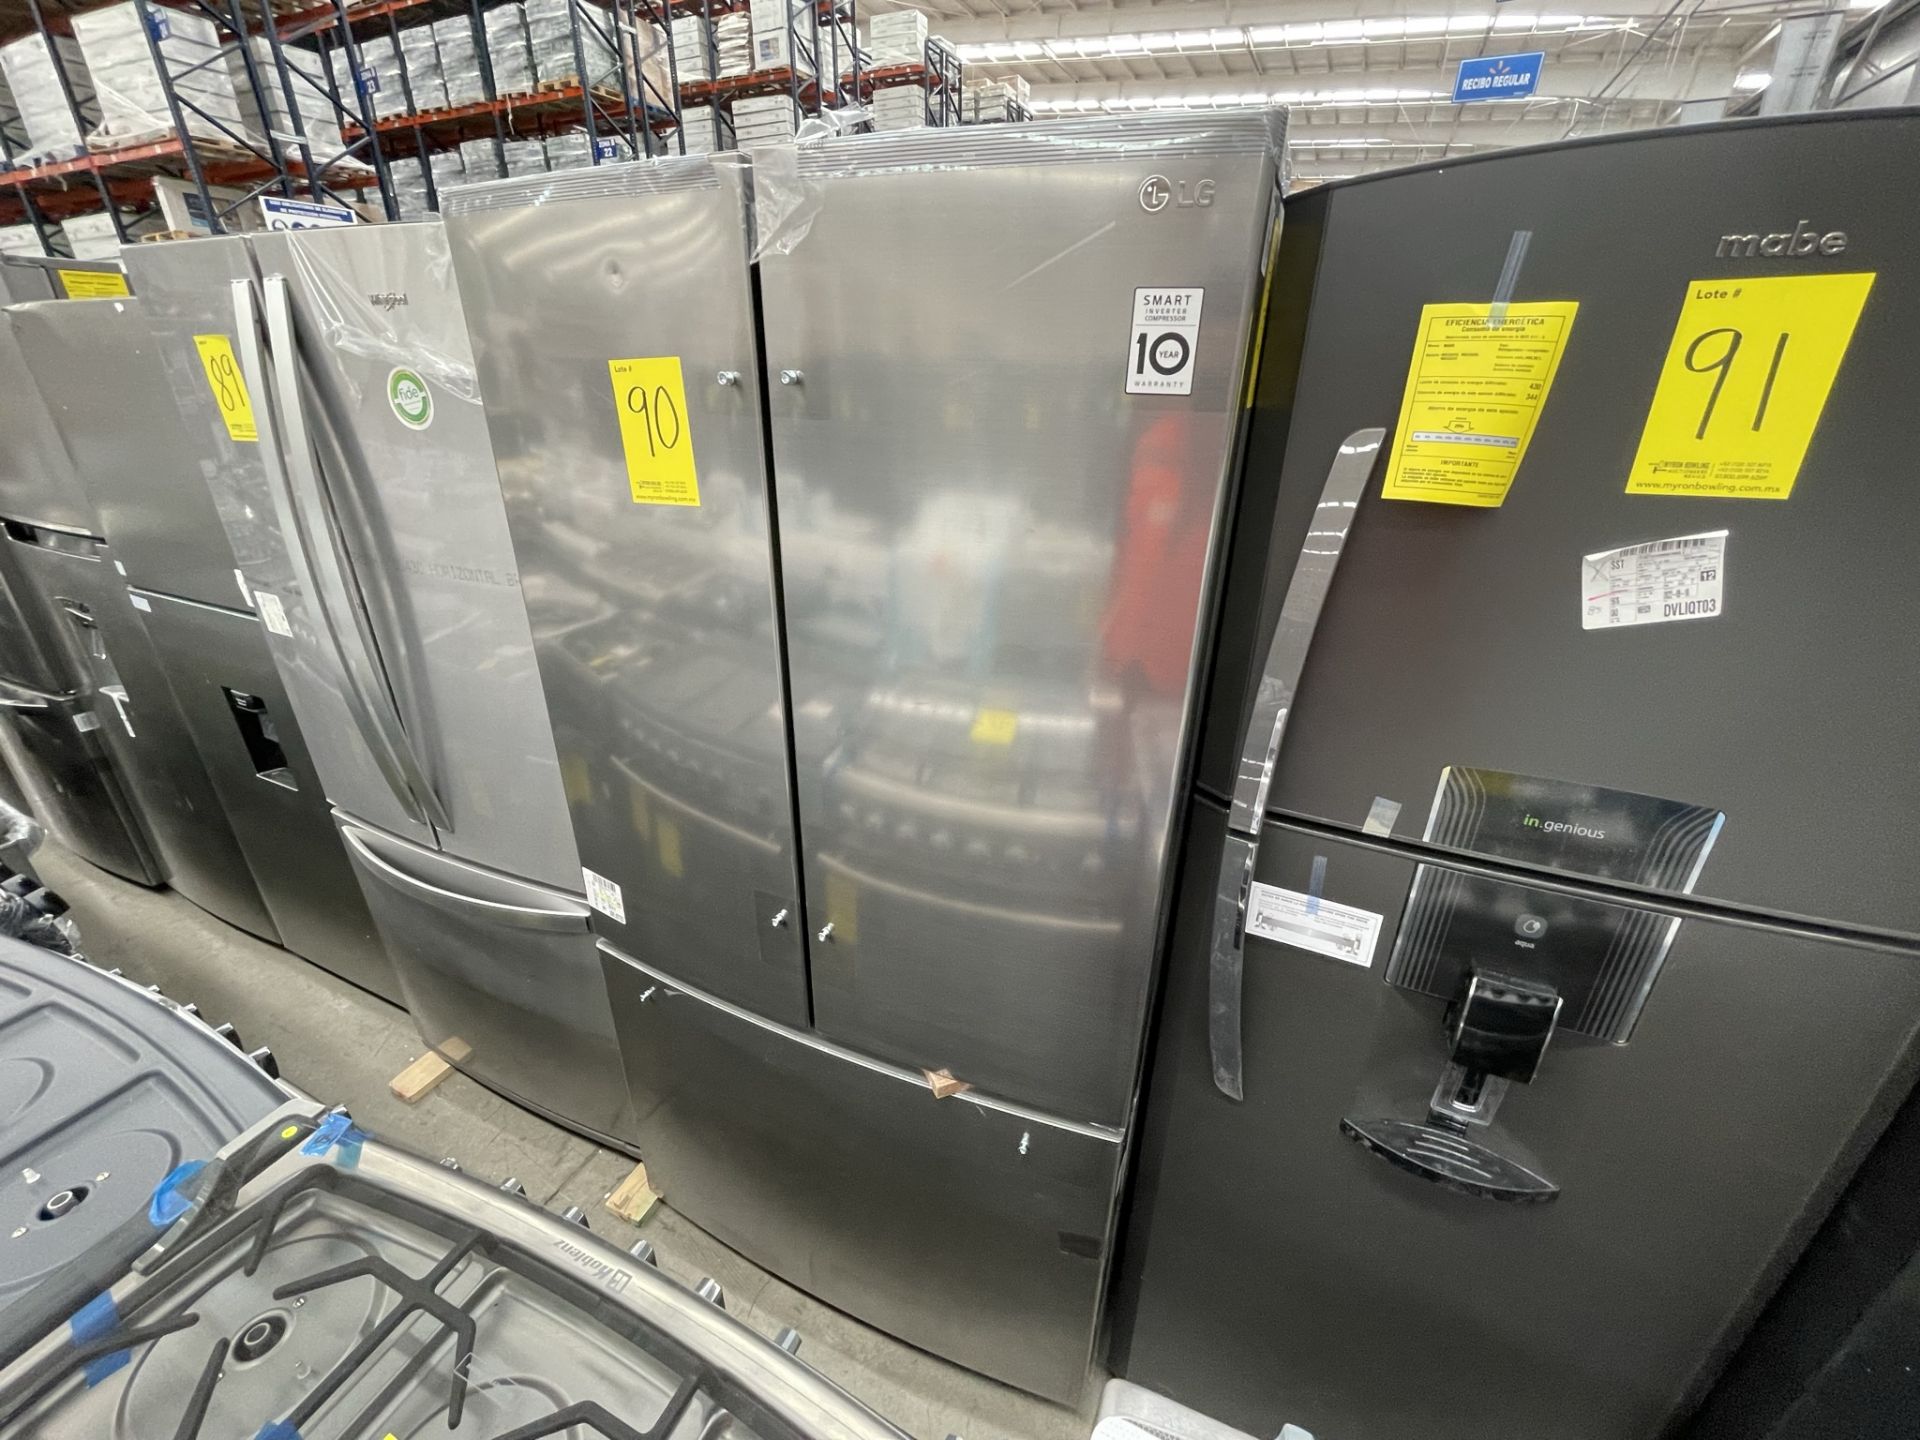 (EQUIPO NUEVO) 1 Refrigerador Marca LG, Modelo GTM29BP, Serie V24961, Color GRIS, LB-619780; (Nuevo - Image 5 of 9